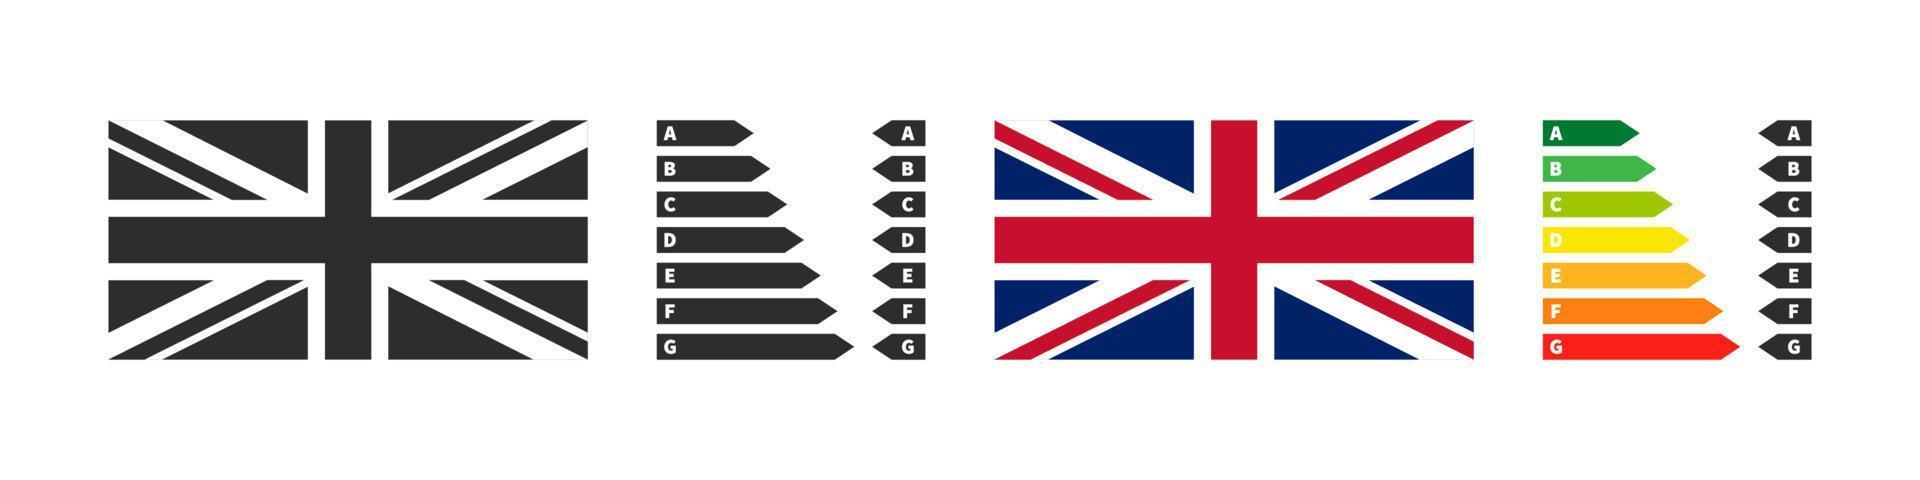 energia efficienza badge di il UK. energia valutazione grafico frecce e bandiera. vettore illustrazione